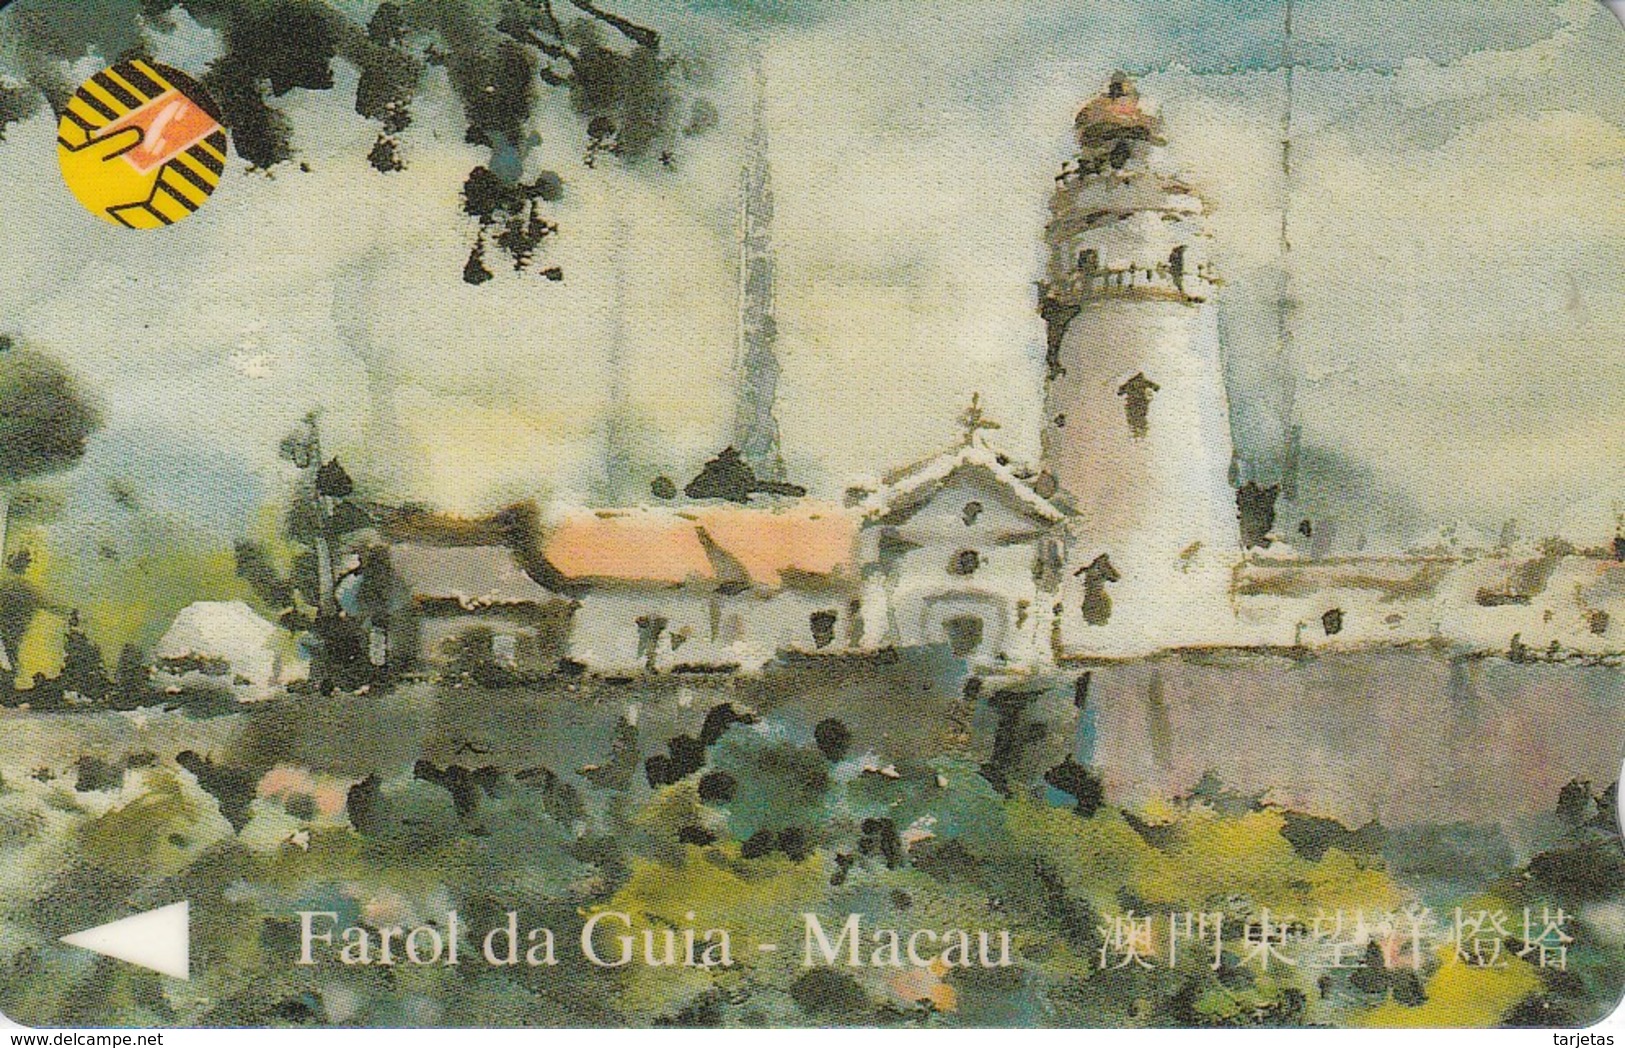 8MACA TARJETA DE MACAO DE FAROL DA GUIA DE CTM MOP100 (LIGHTHOUSE) - Macau